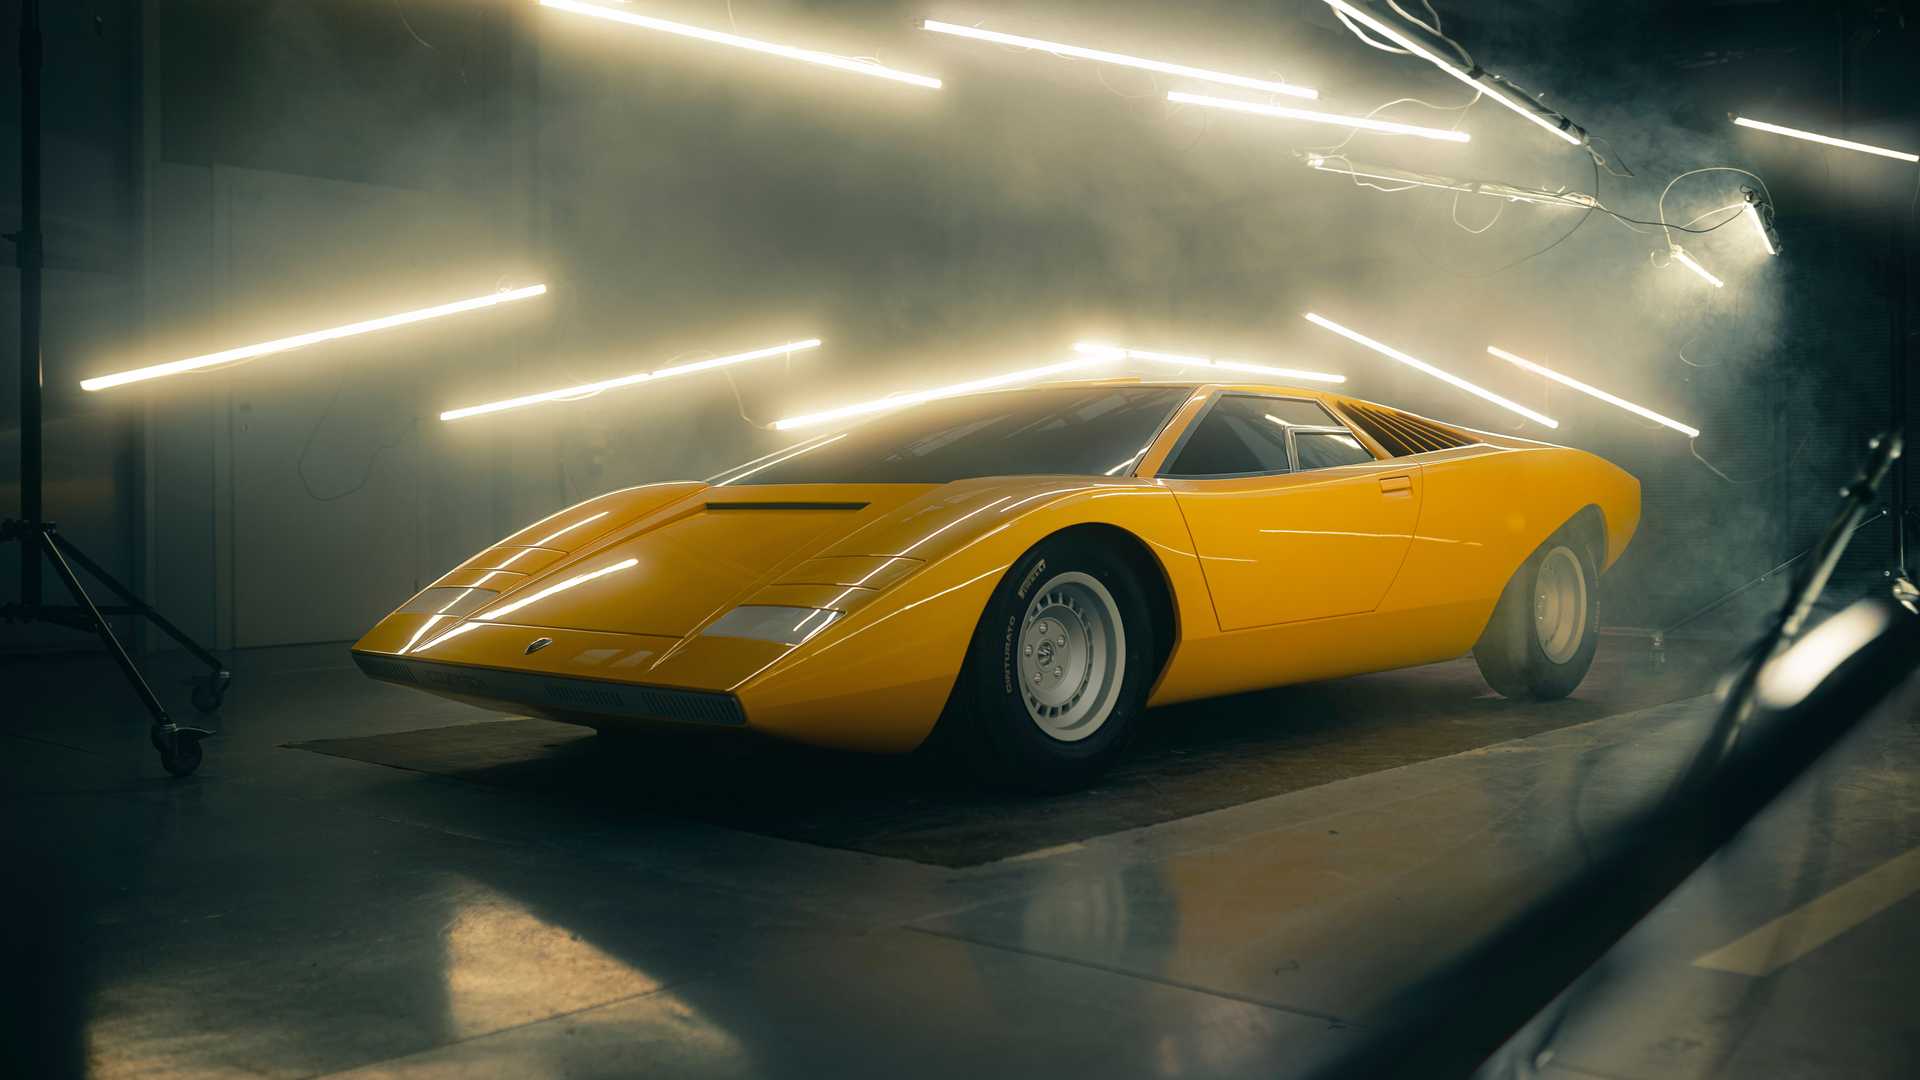 Mặc dù đã ra mắt Lamborghini Countach mới nhưng hãng siêu xe Ý vẫn phục chế  1 phiên bản cũ độc nhất vô nhị